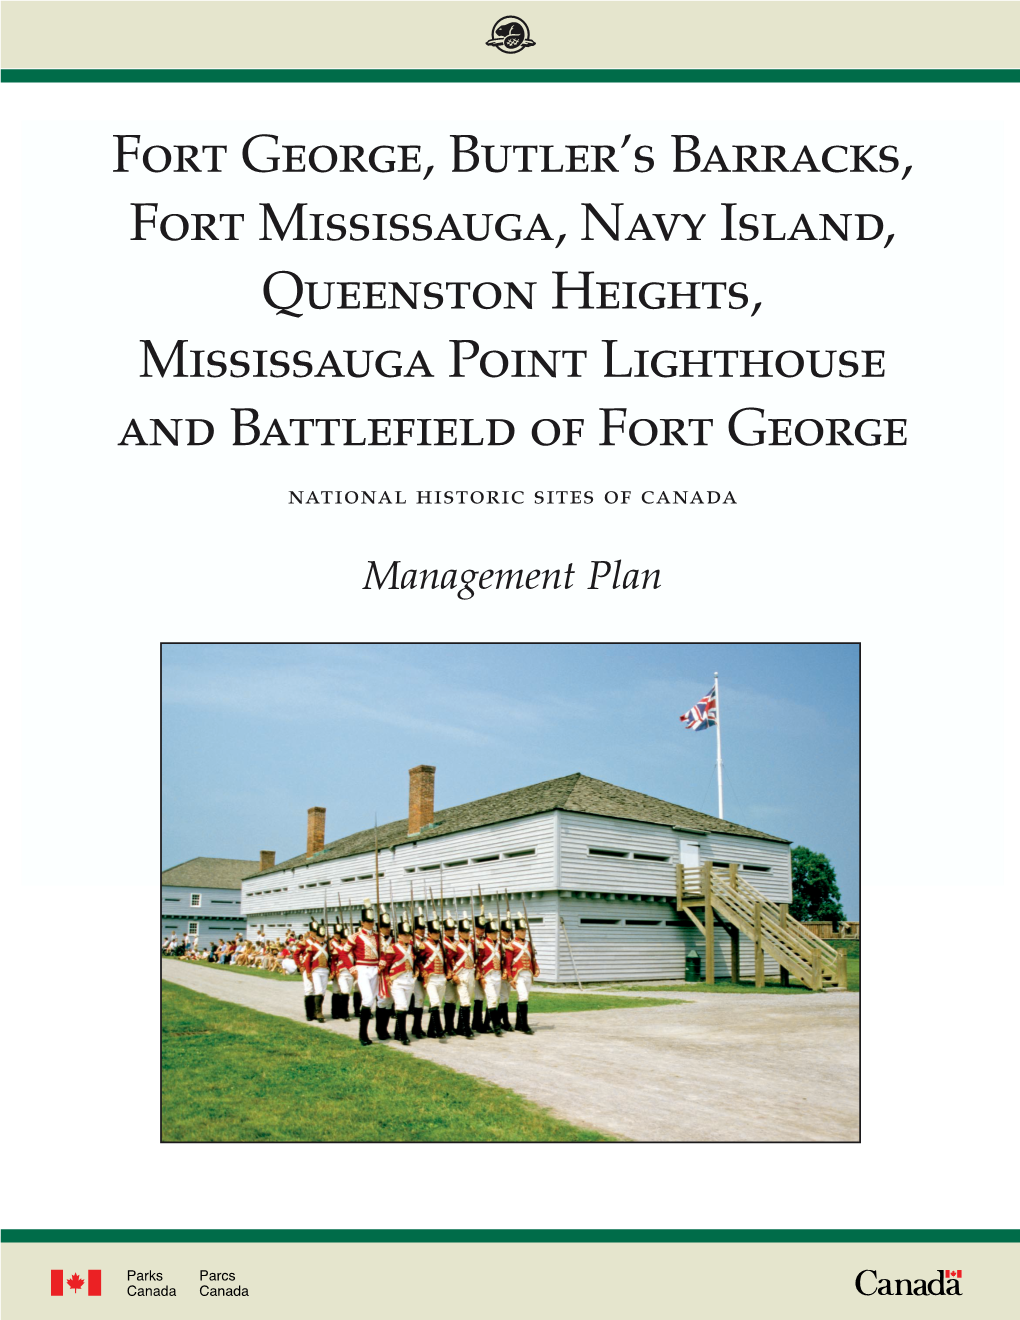 Fort George, Butler's Barracks, Fort Mississauga, Navy Island